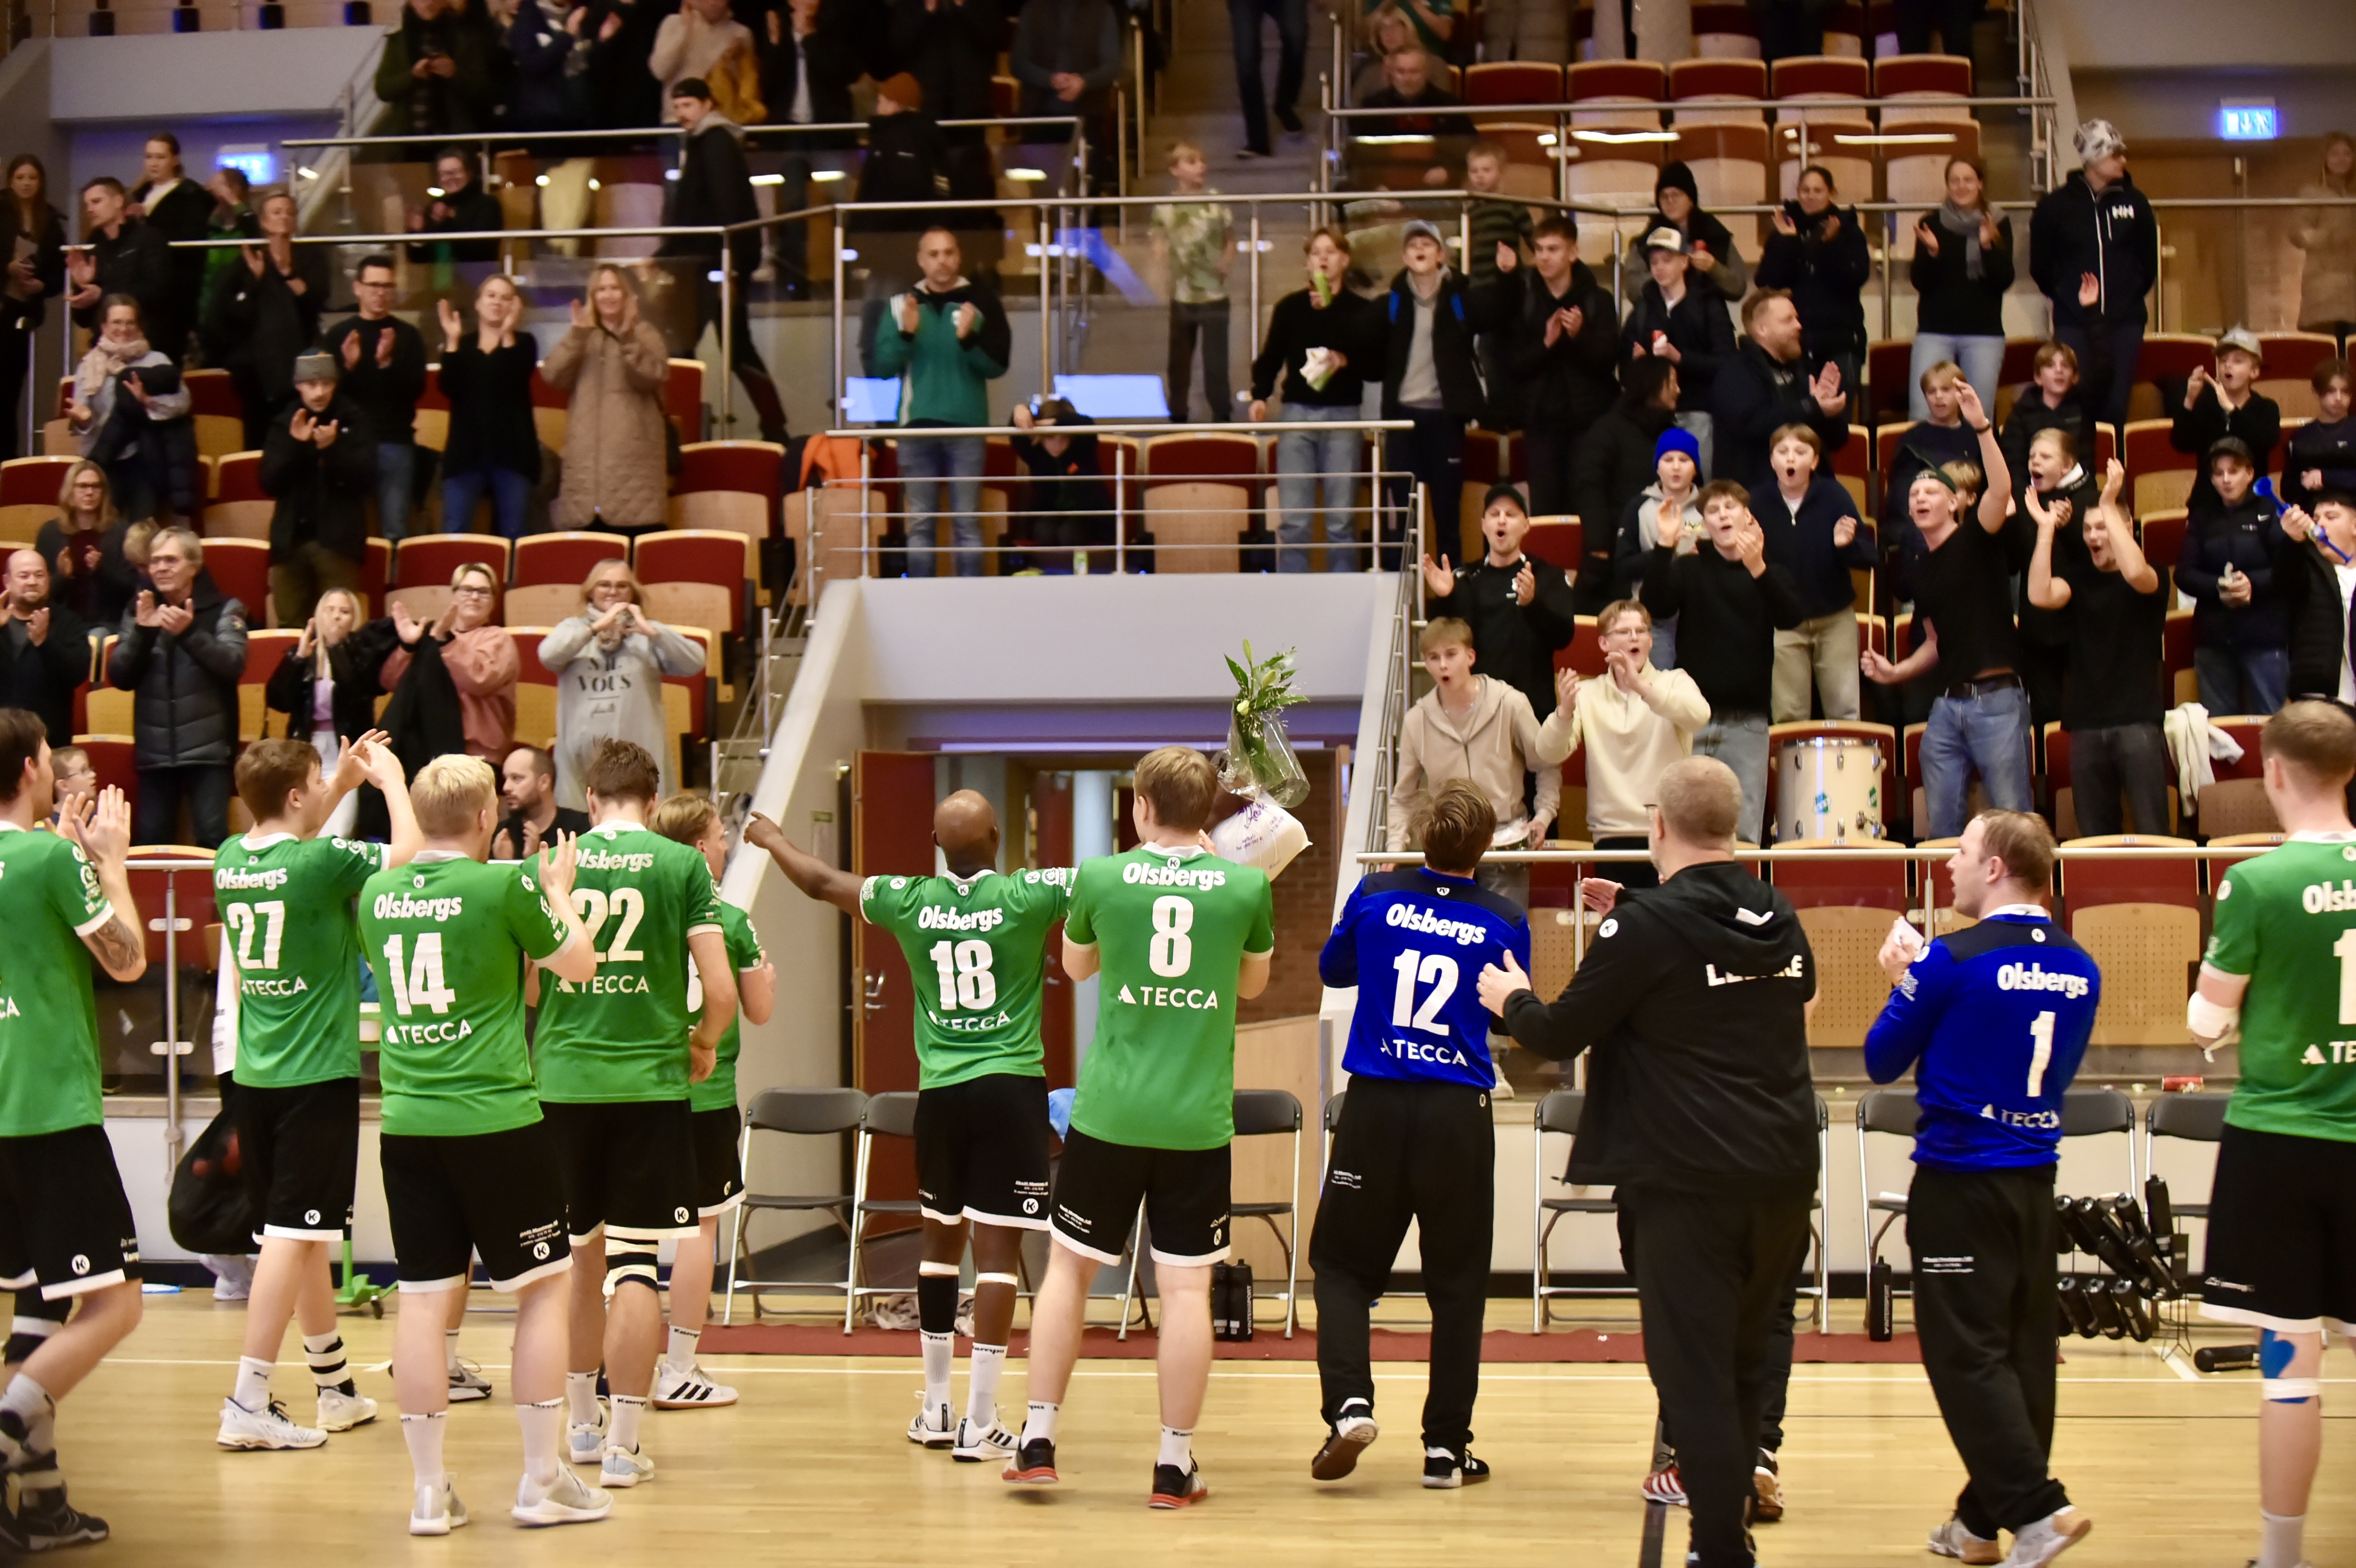 Det var handbollsfest så det ekade om det i Olsbergs arena i helgen och över 500 personer såg EBK vinna mot Västerås Irsta.